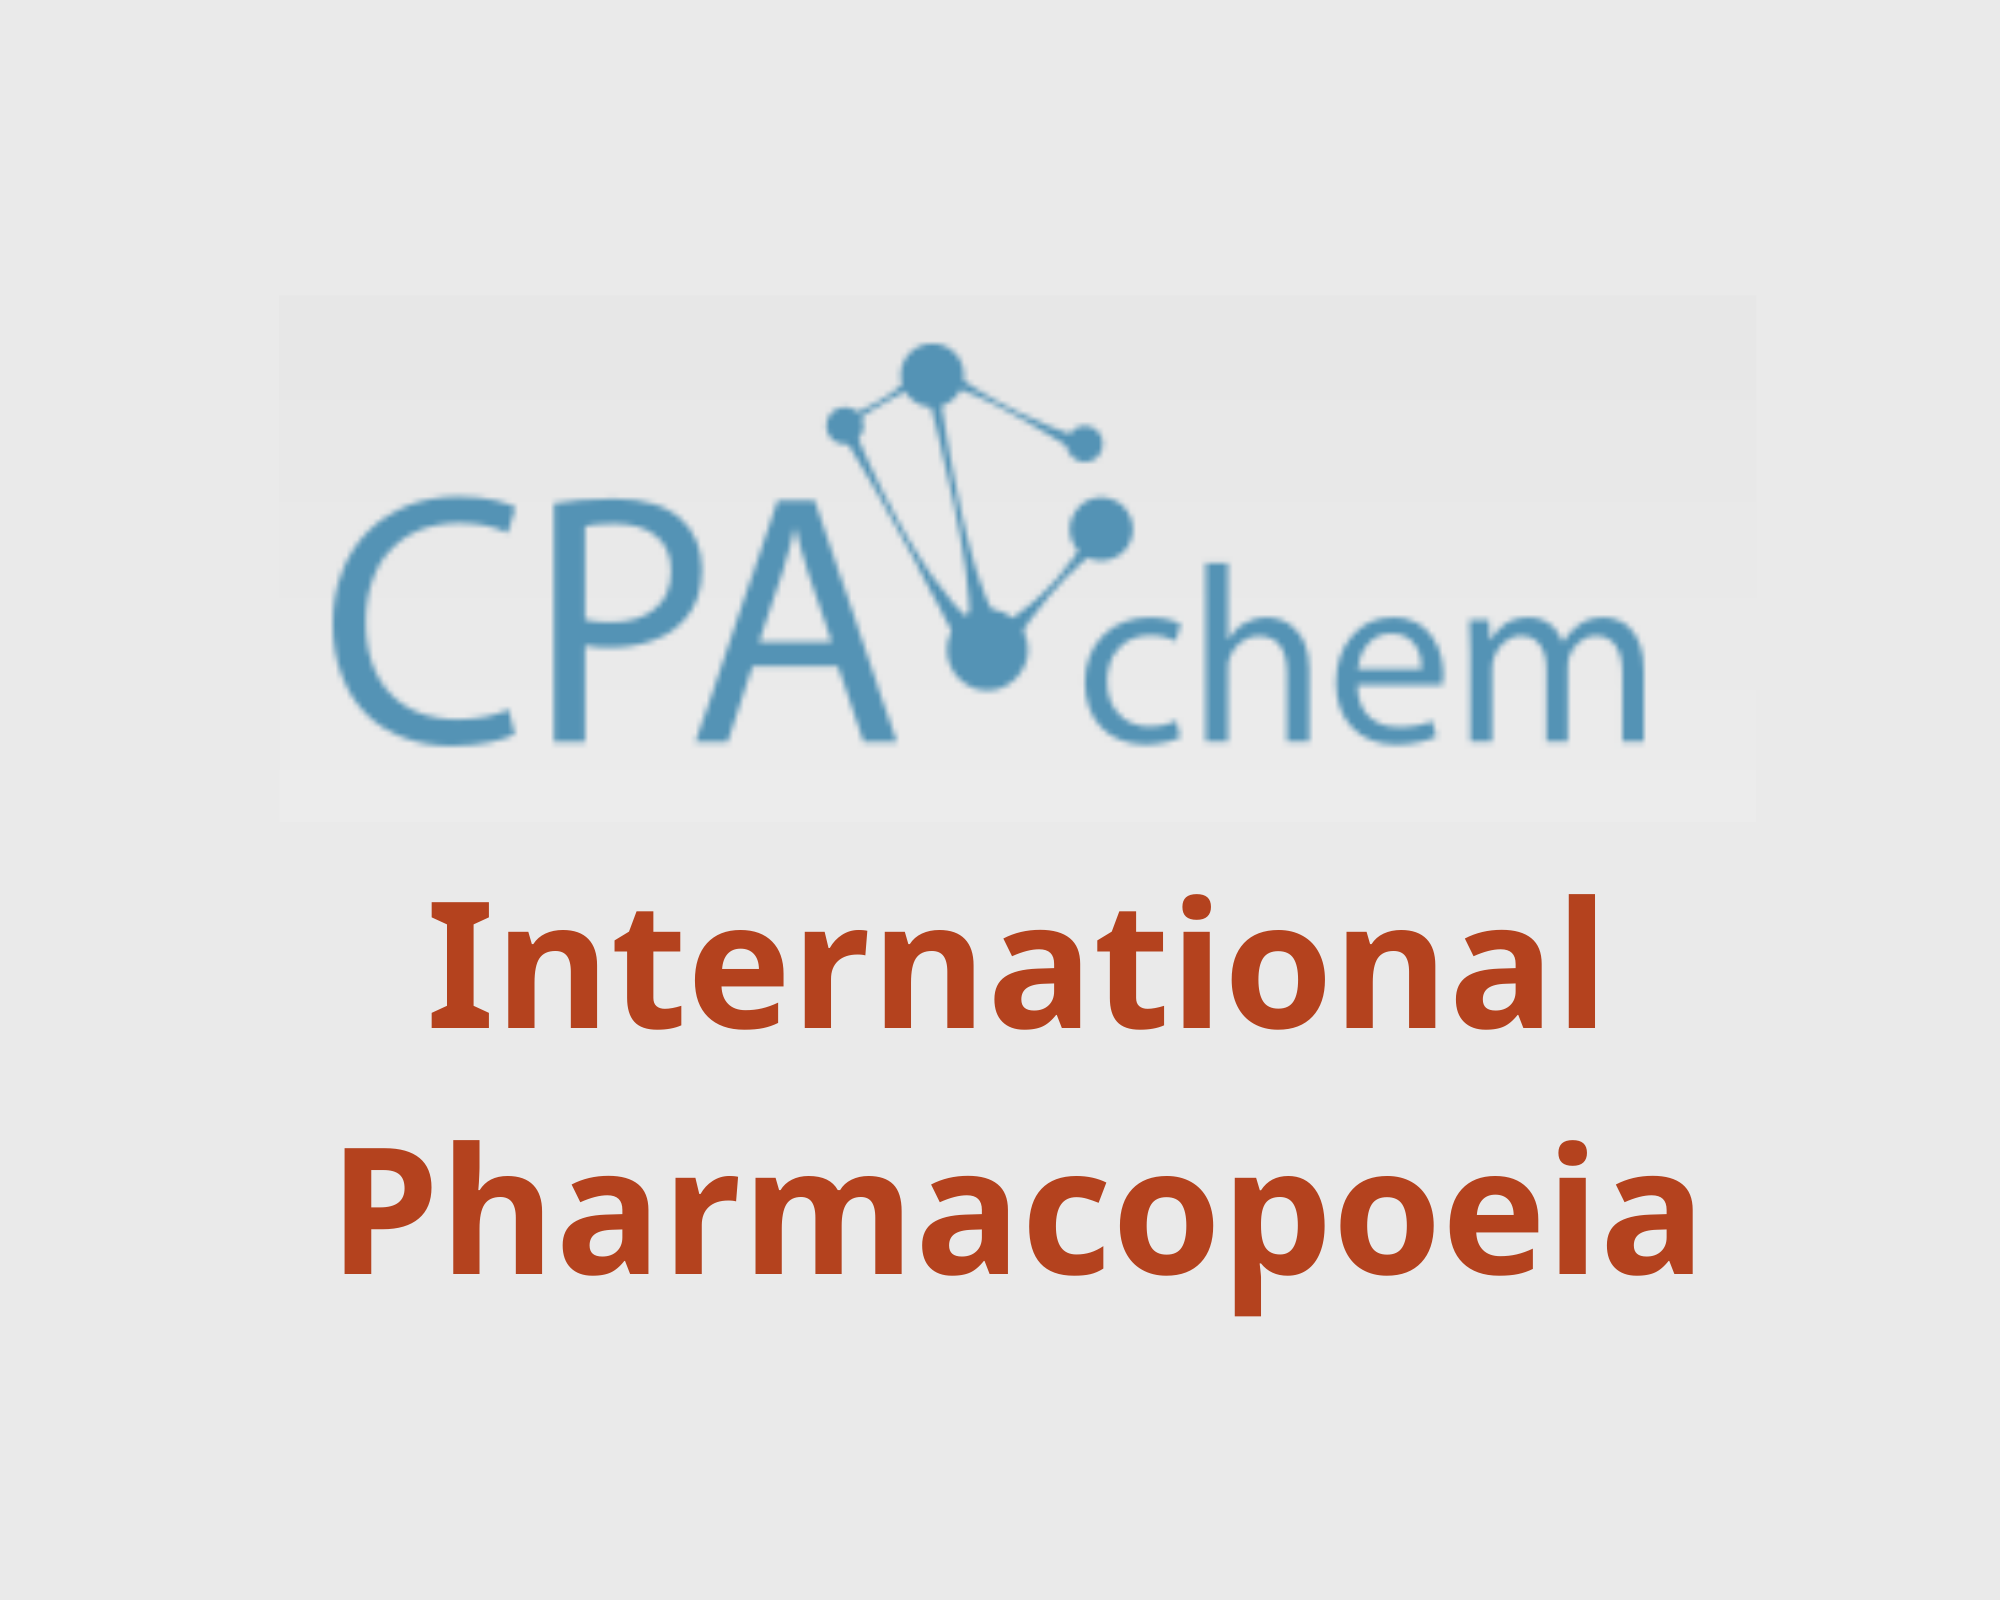 Danh sách các Chất Chuẩn Dược theo Dược Điển Quốc Tế - International Pharmacopoeia, CPAChem, Bungari